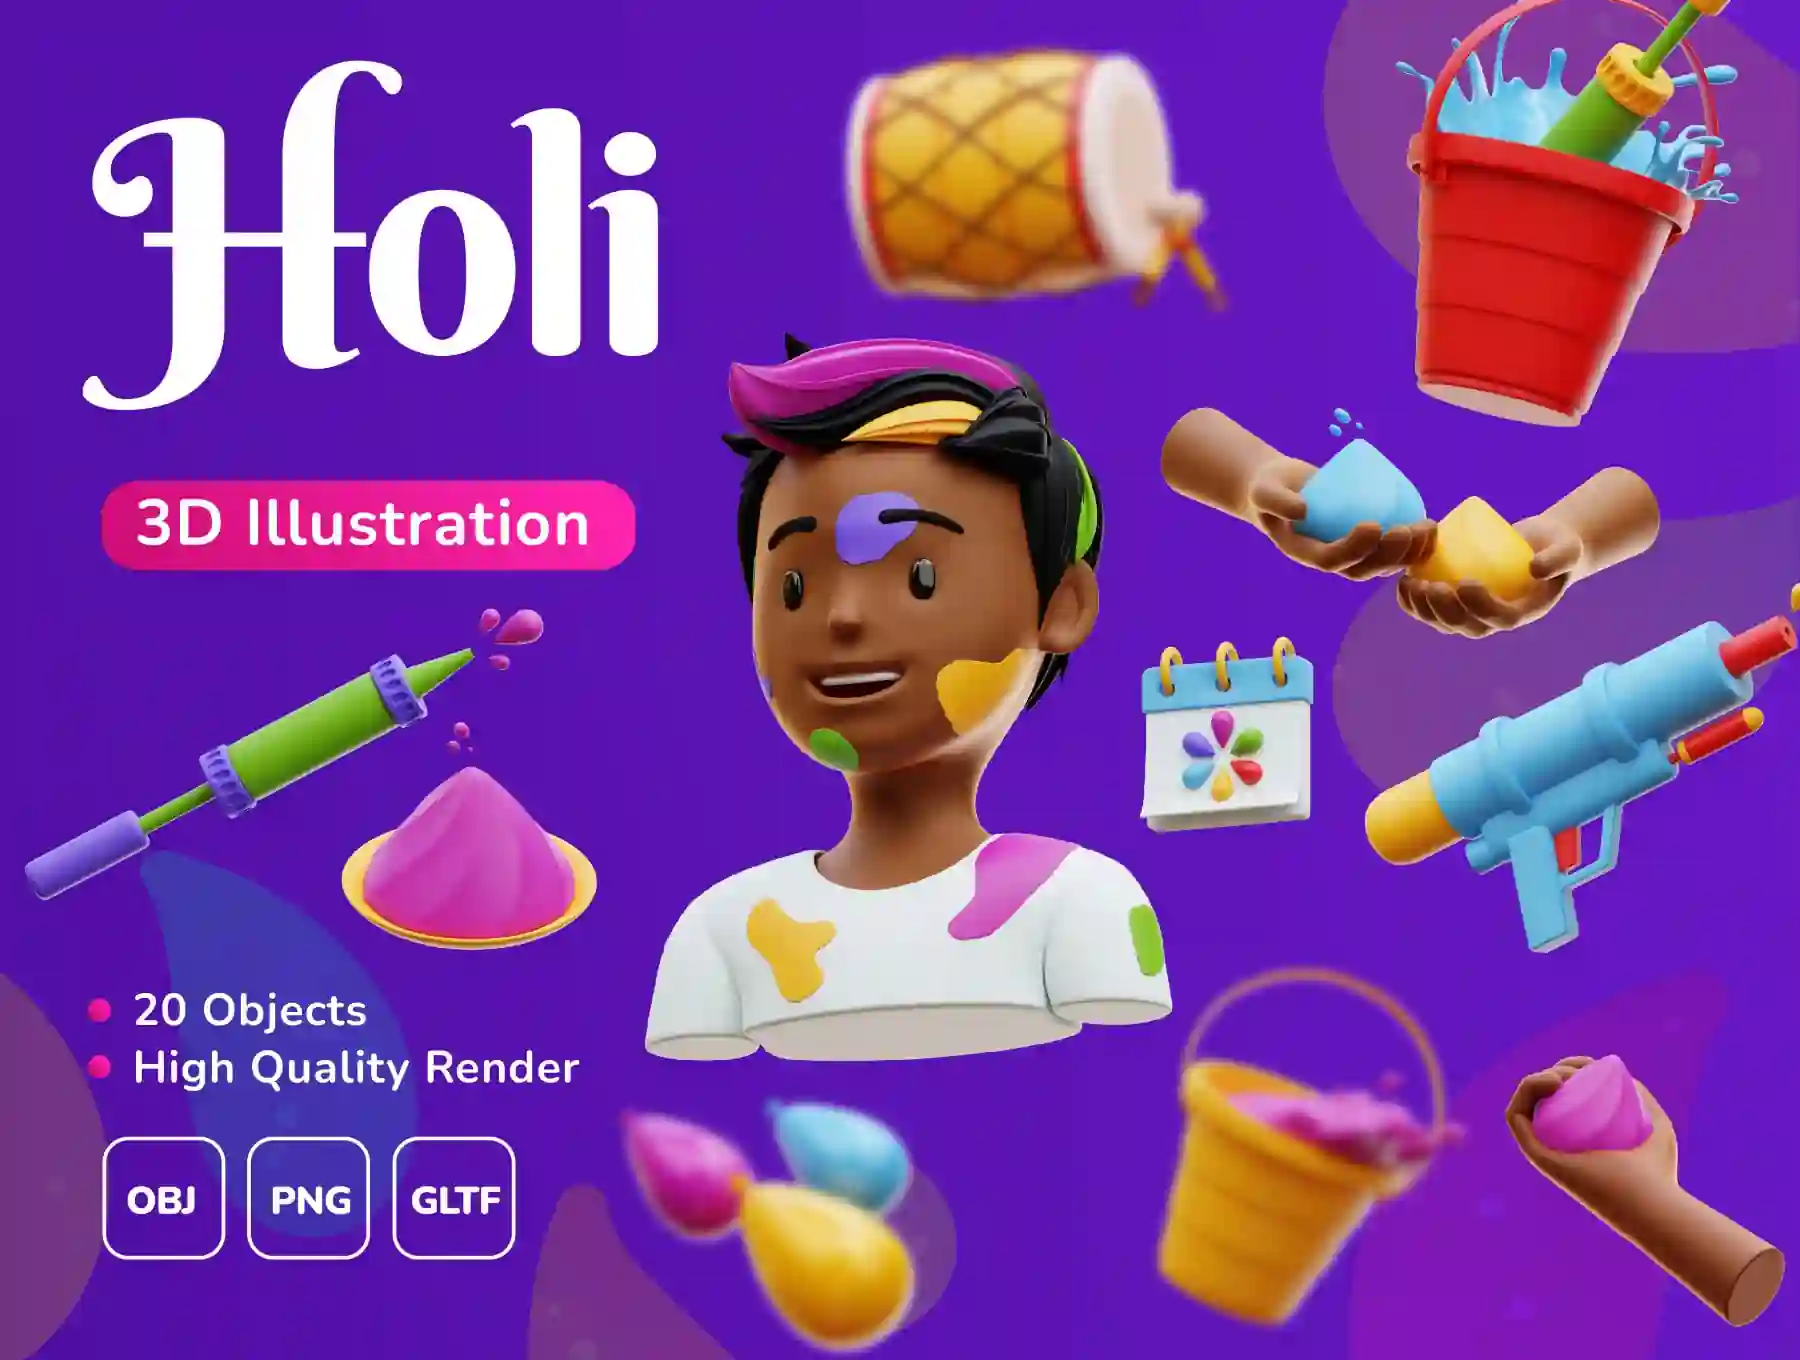 Holi Festival - 3D illustration Pack